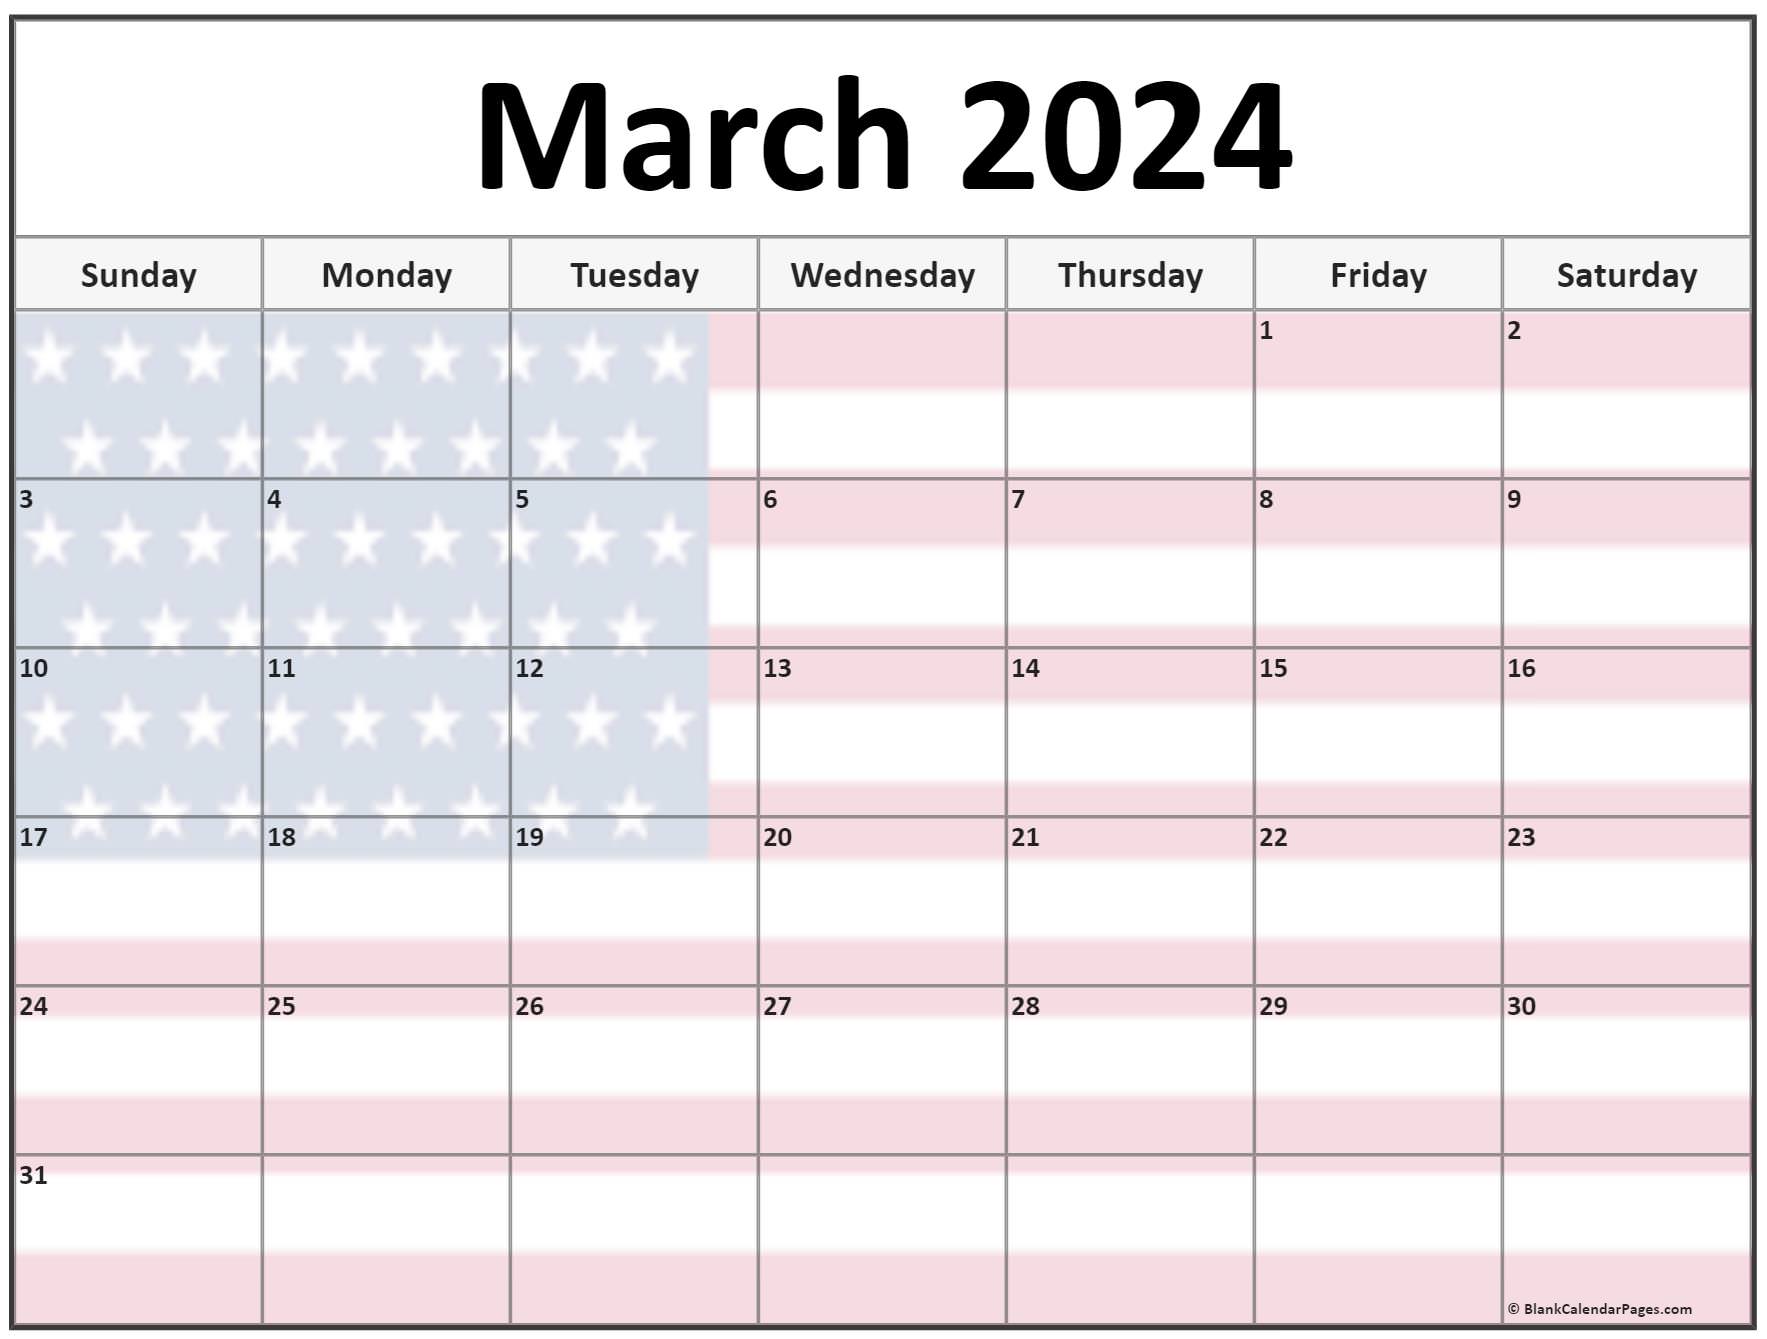 Calendar March 2024 Wallpaper Easy to Use Calendar App 2024